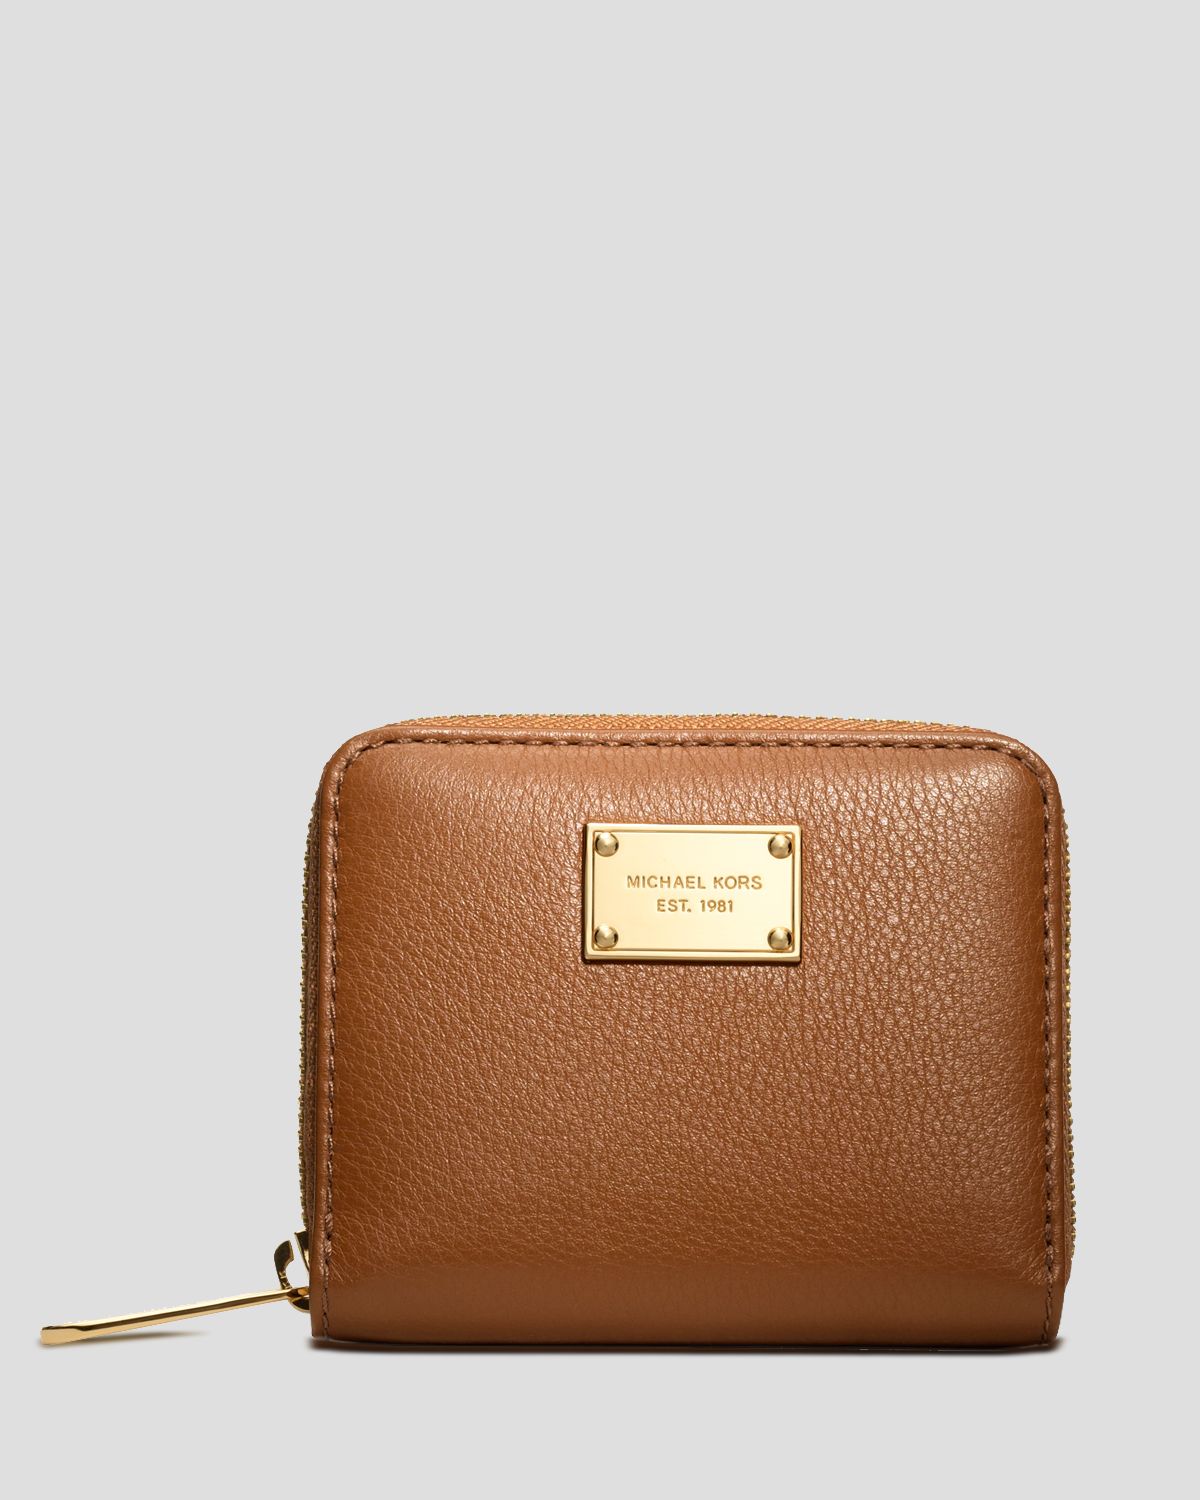 MK wallet brown